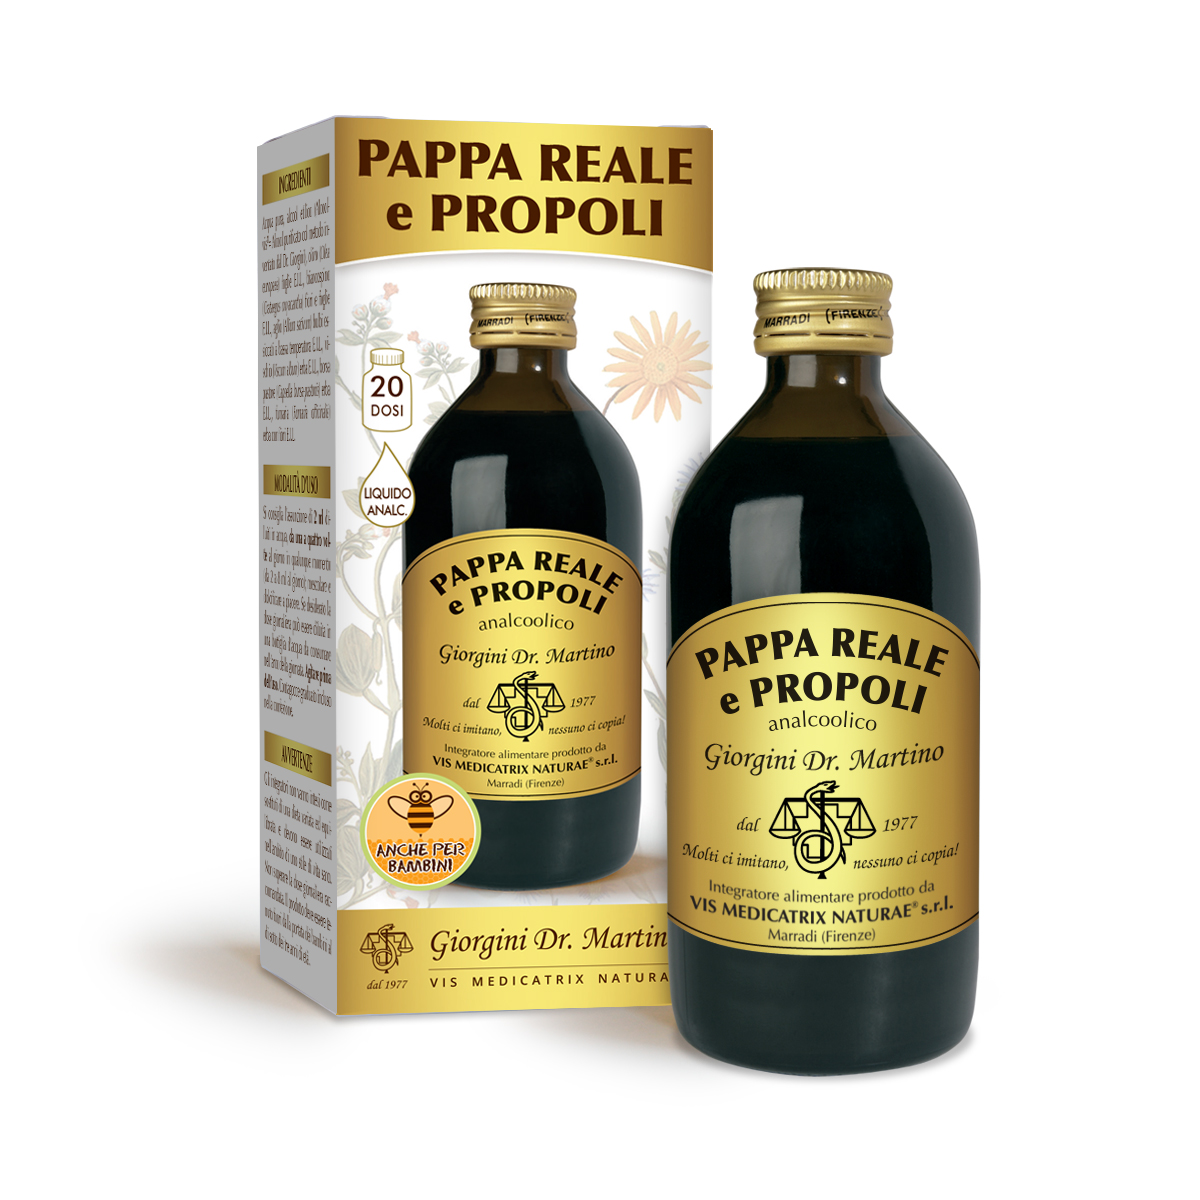 PAPPA REALE E PROPOLI analc. 200 ml